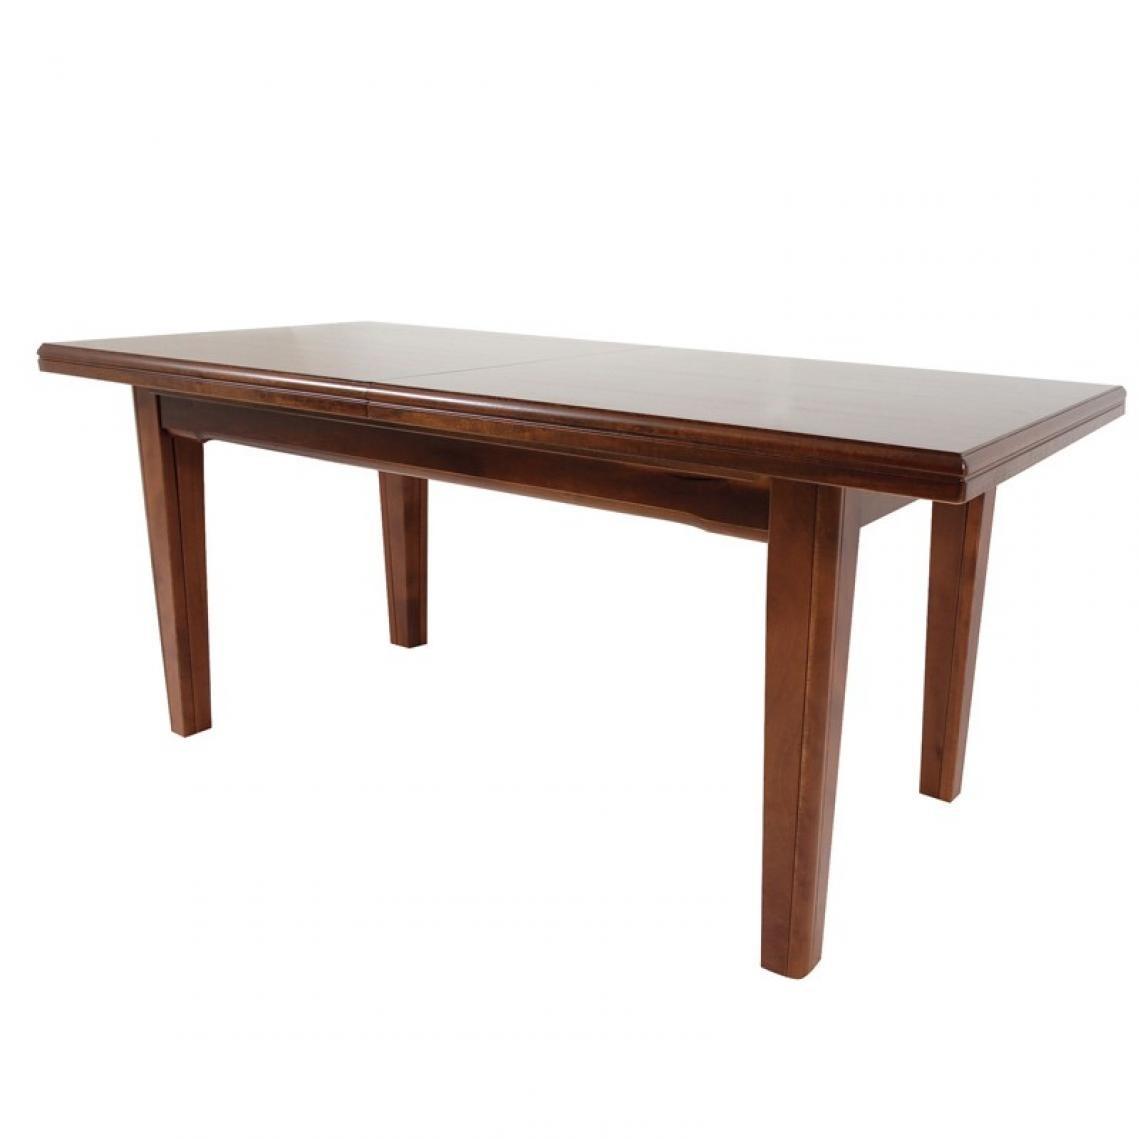 Webmarketpoint - Table extensible rectangulaire en bois massif de couleur noyer 85x180 / 360 cm - Tables à manger